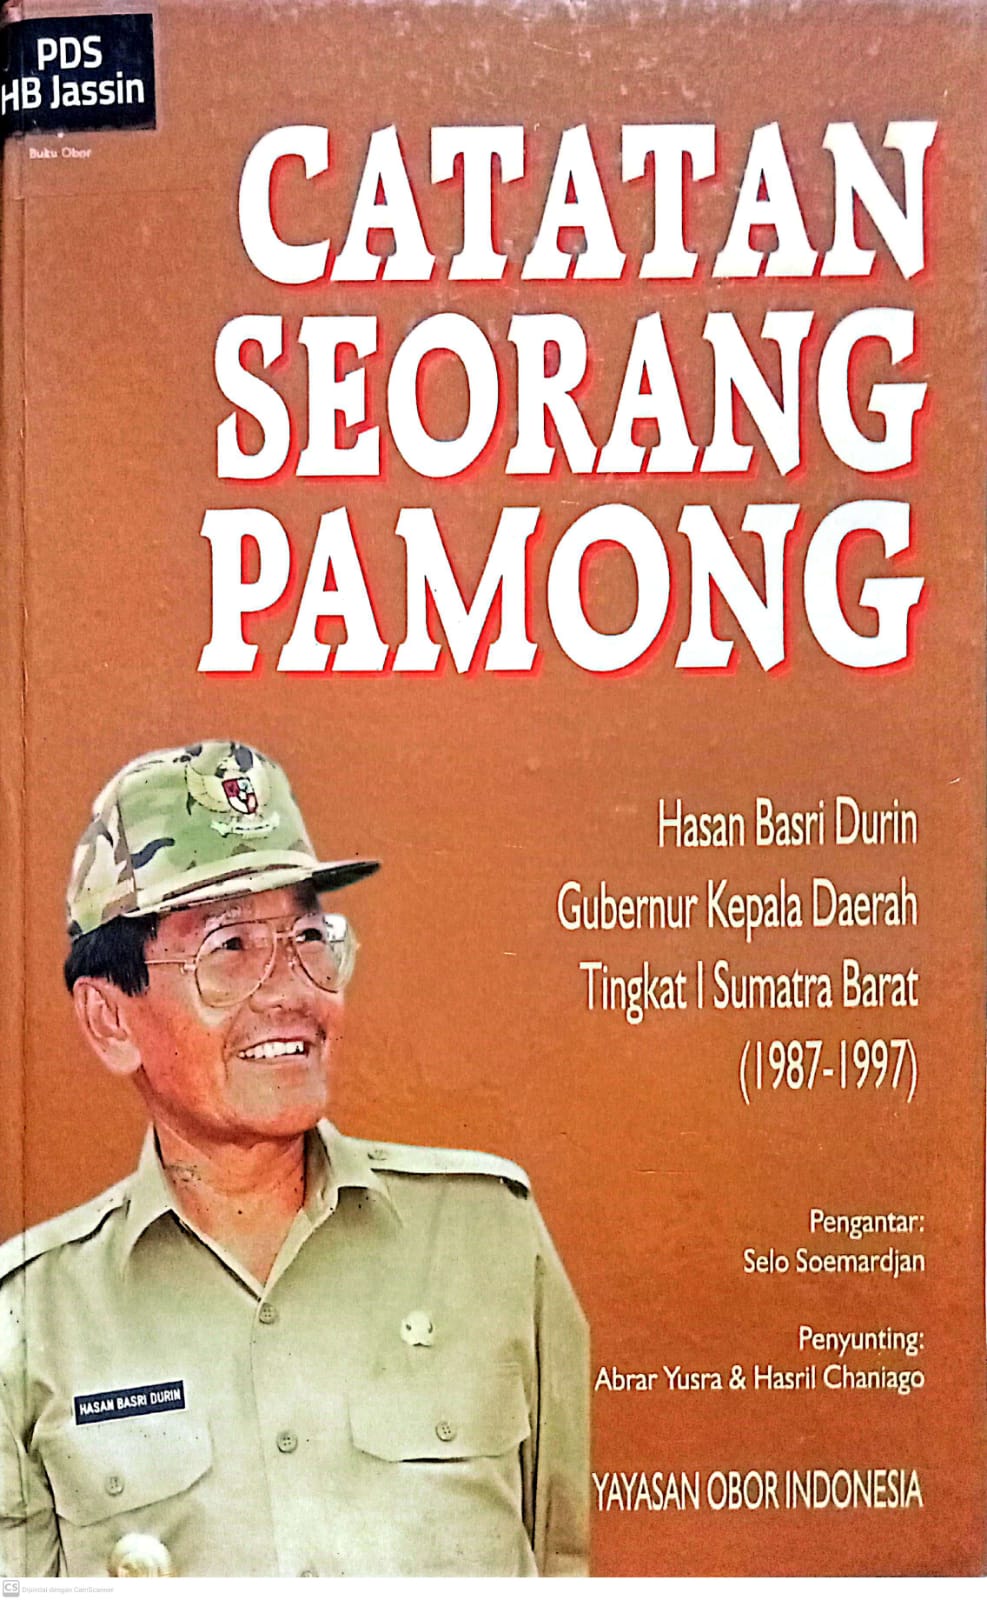 Catatan seorang pamong :  Hasan Basri Druin, Gubernur Kepala Daerah Tingkat I Sumatera Barat 1987-1997